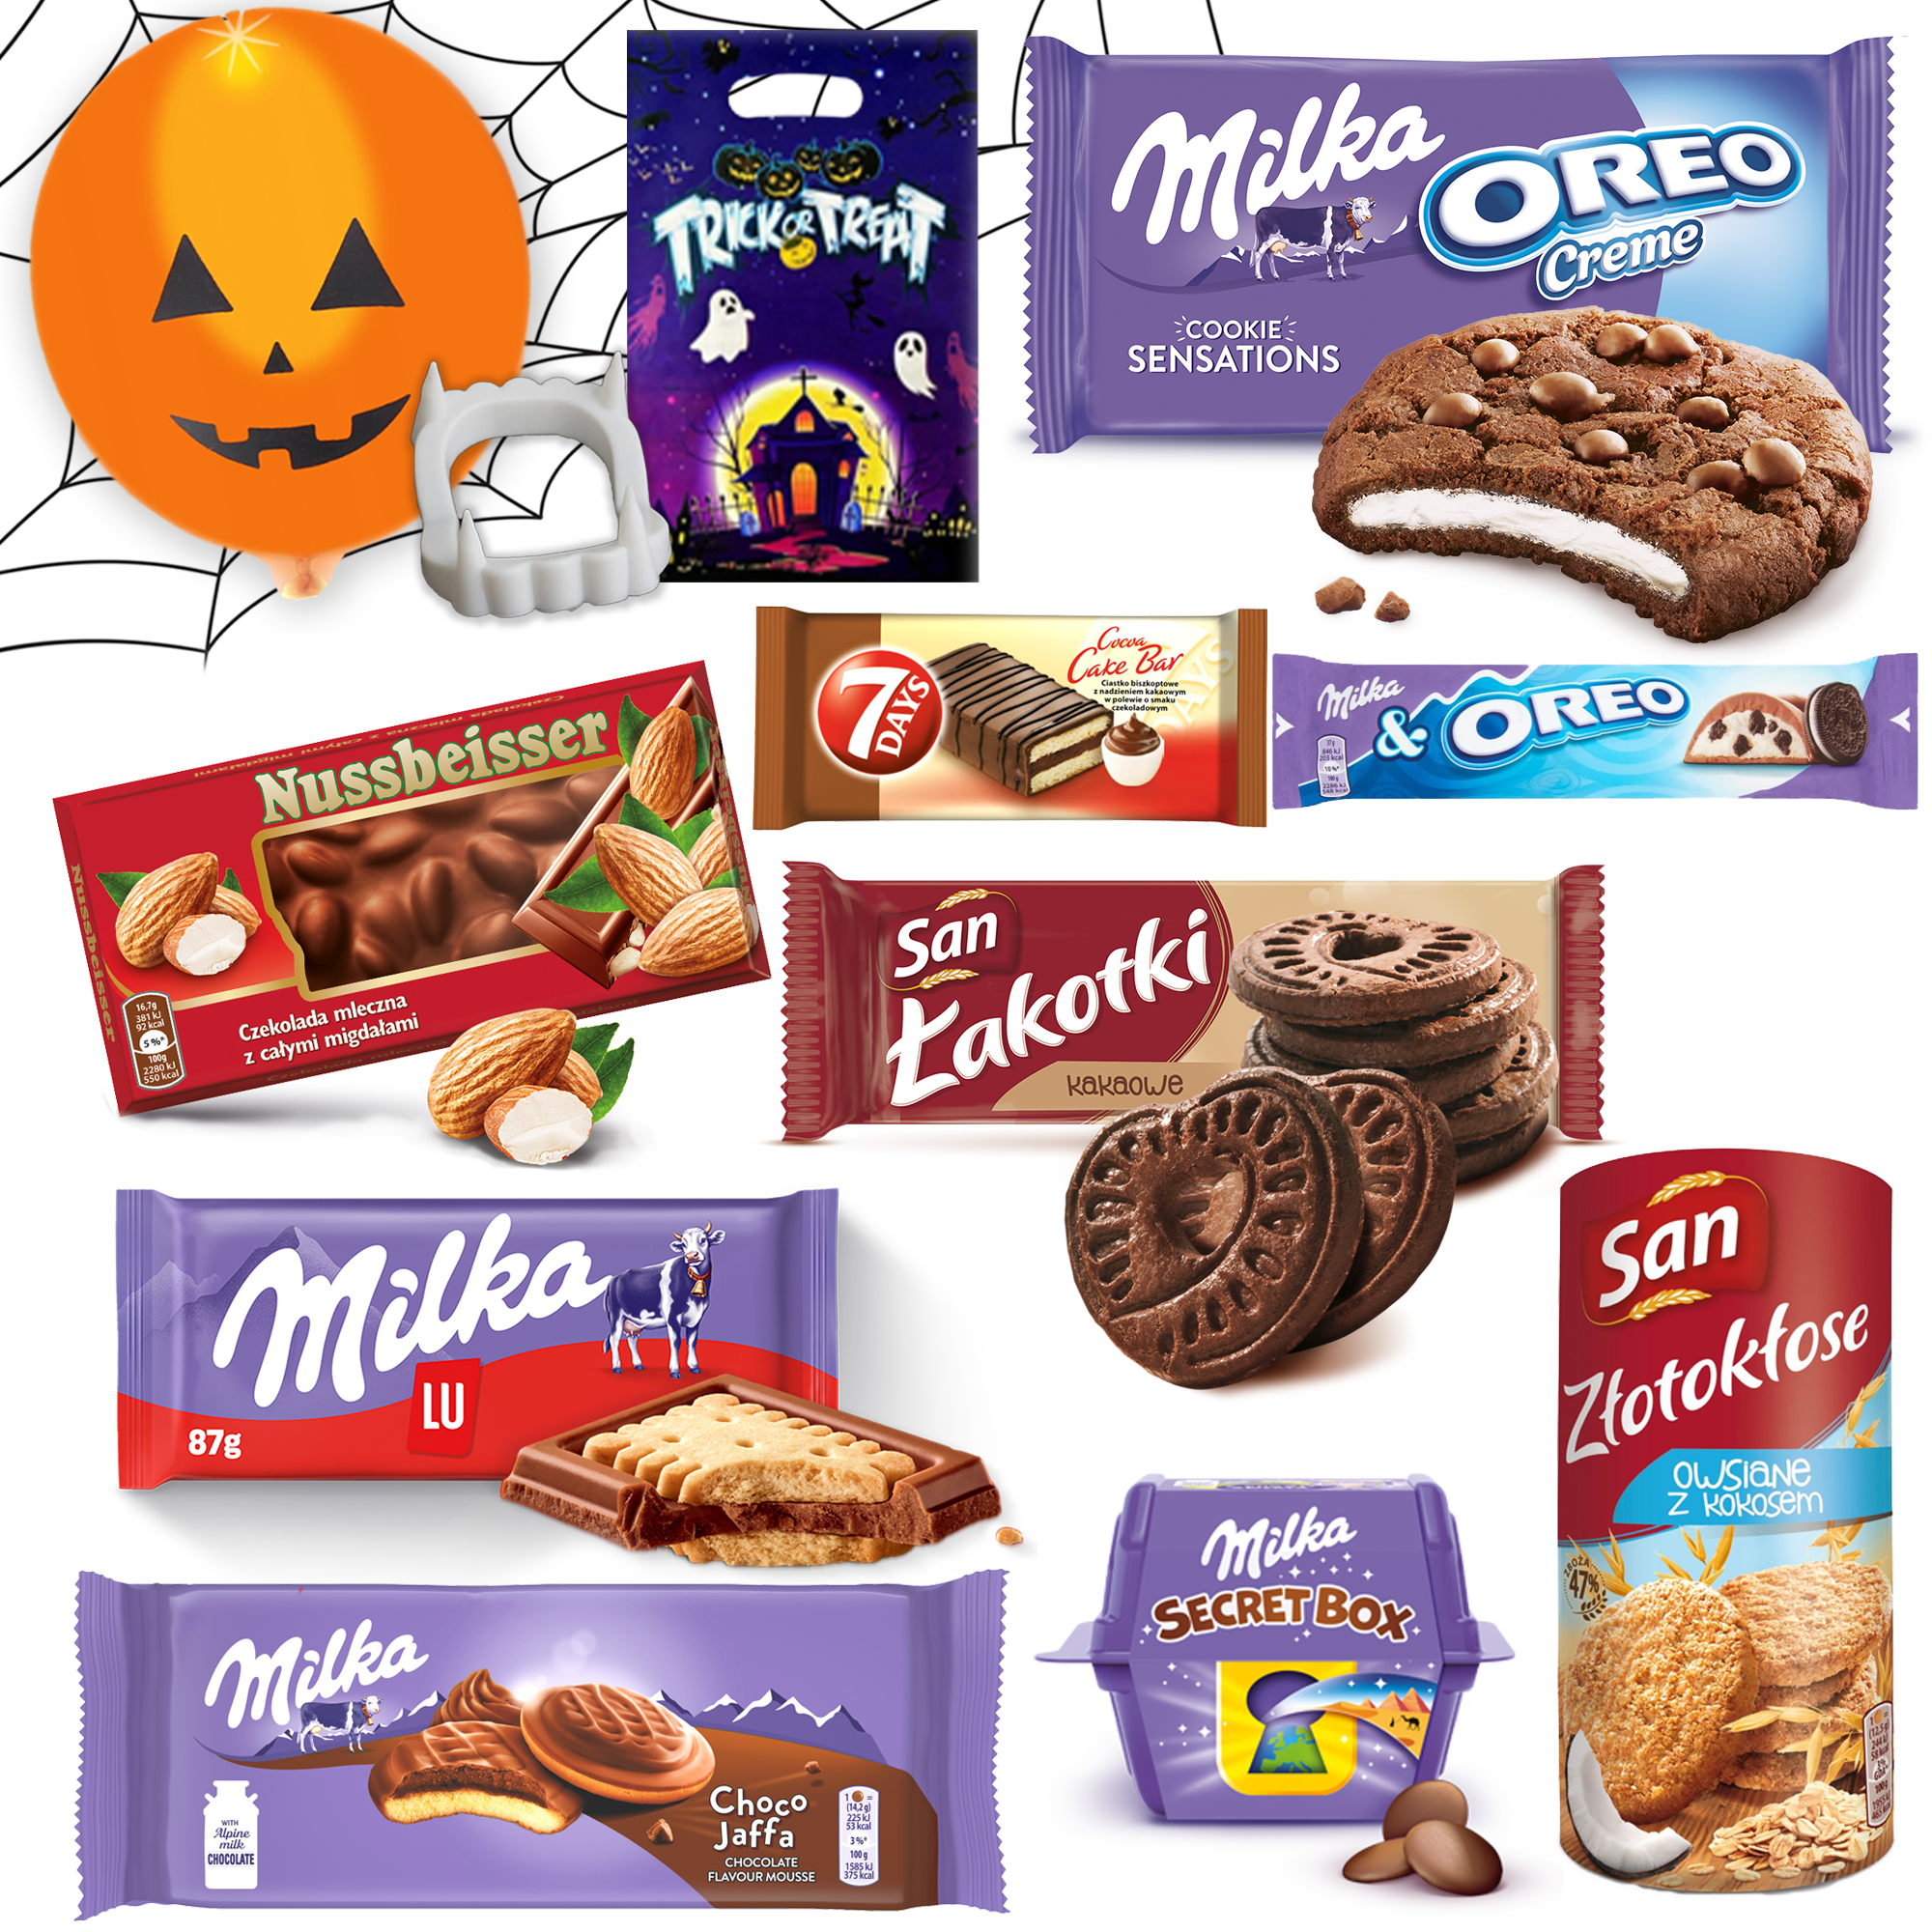 Zestaw słodyczy na Halloween mix Milka, San, Nussbeisser, Delicje + gratisy